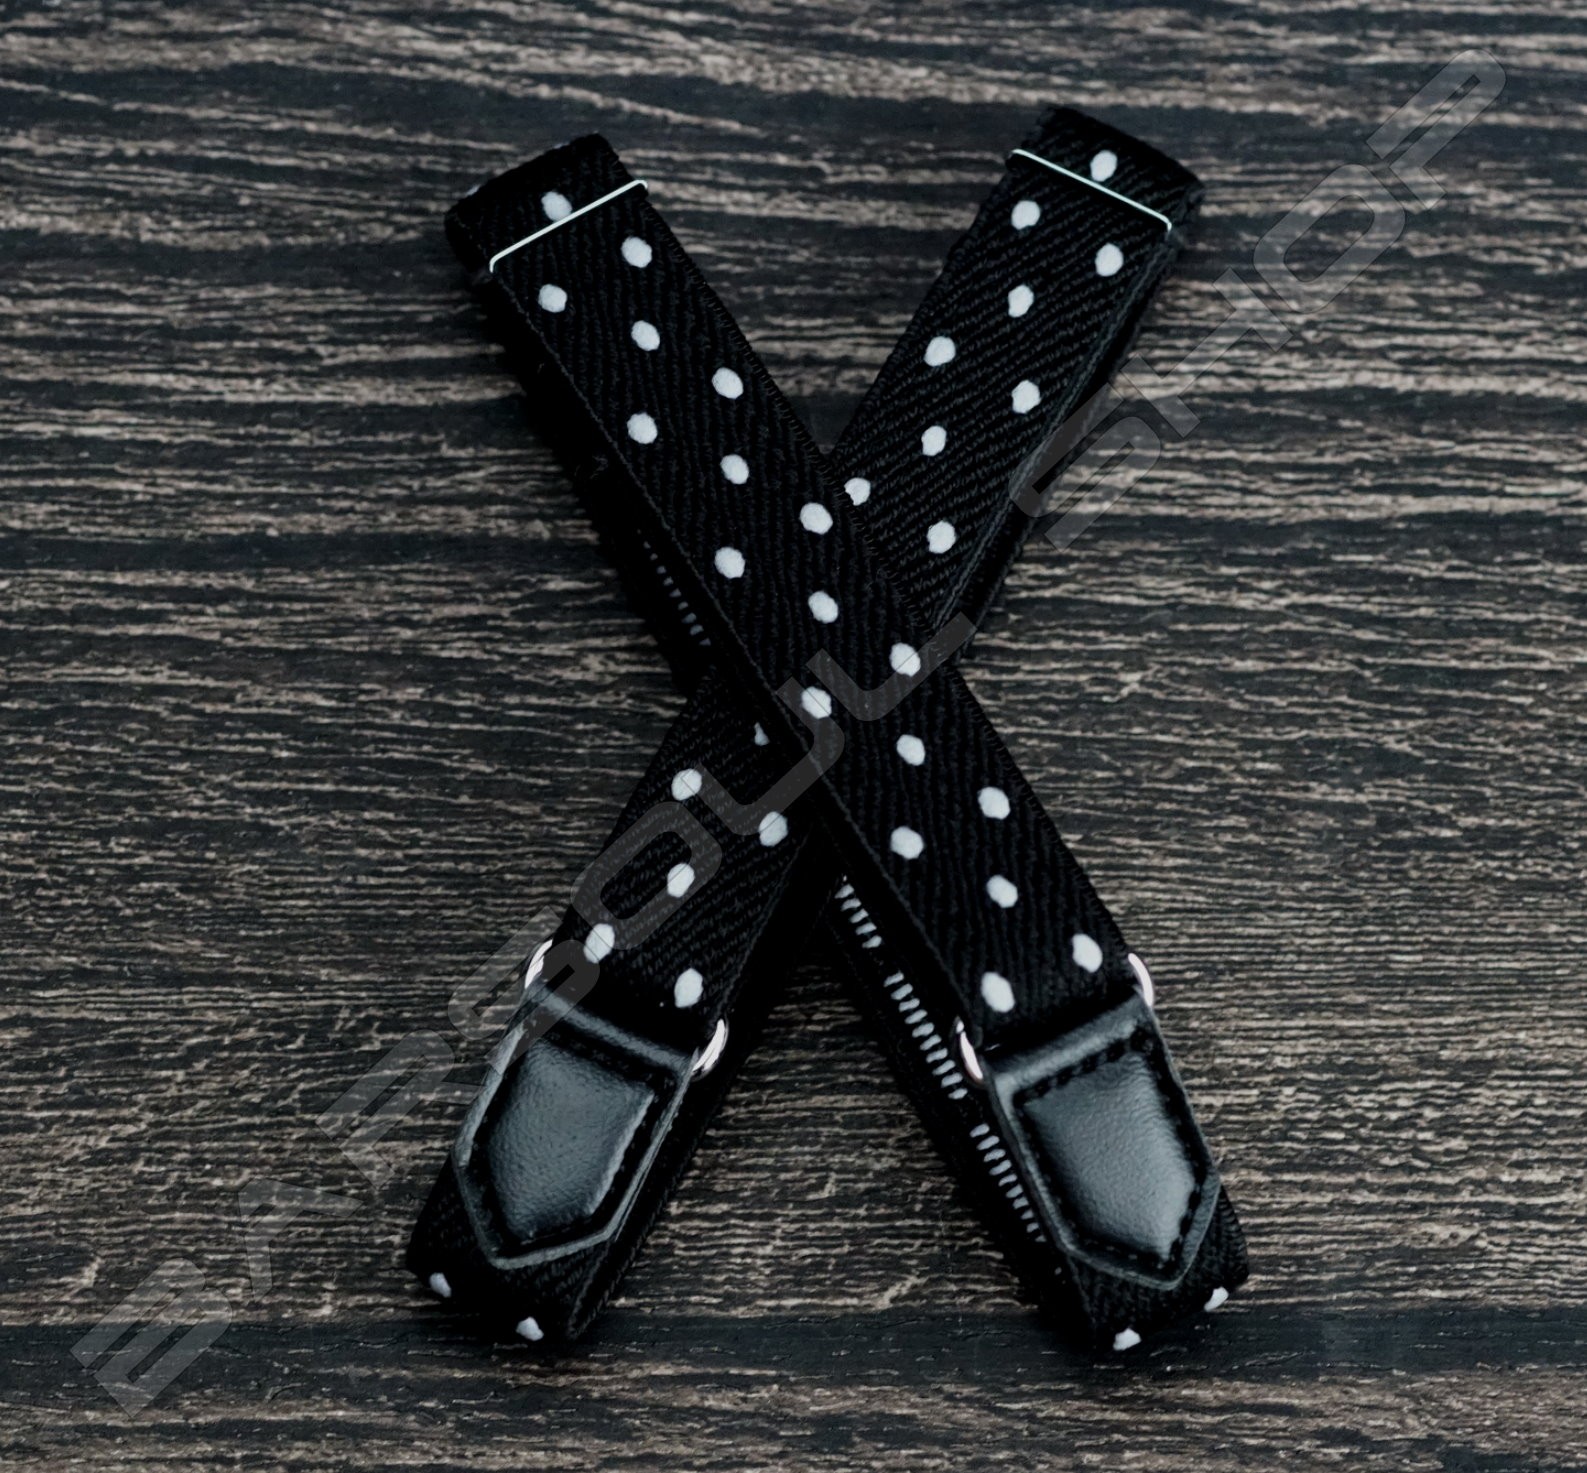 【日本直送】日式伸縮皮飾袖環(黑底白點) Sleeve garters(D21)